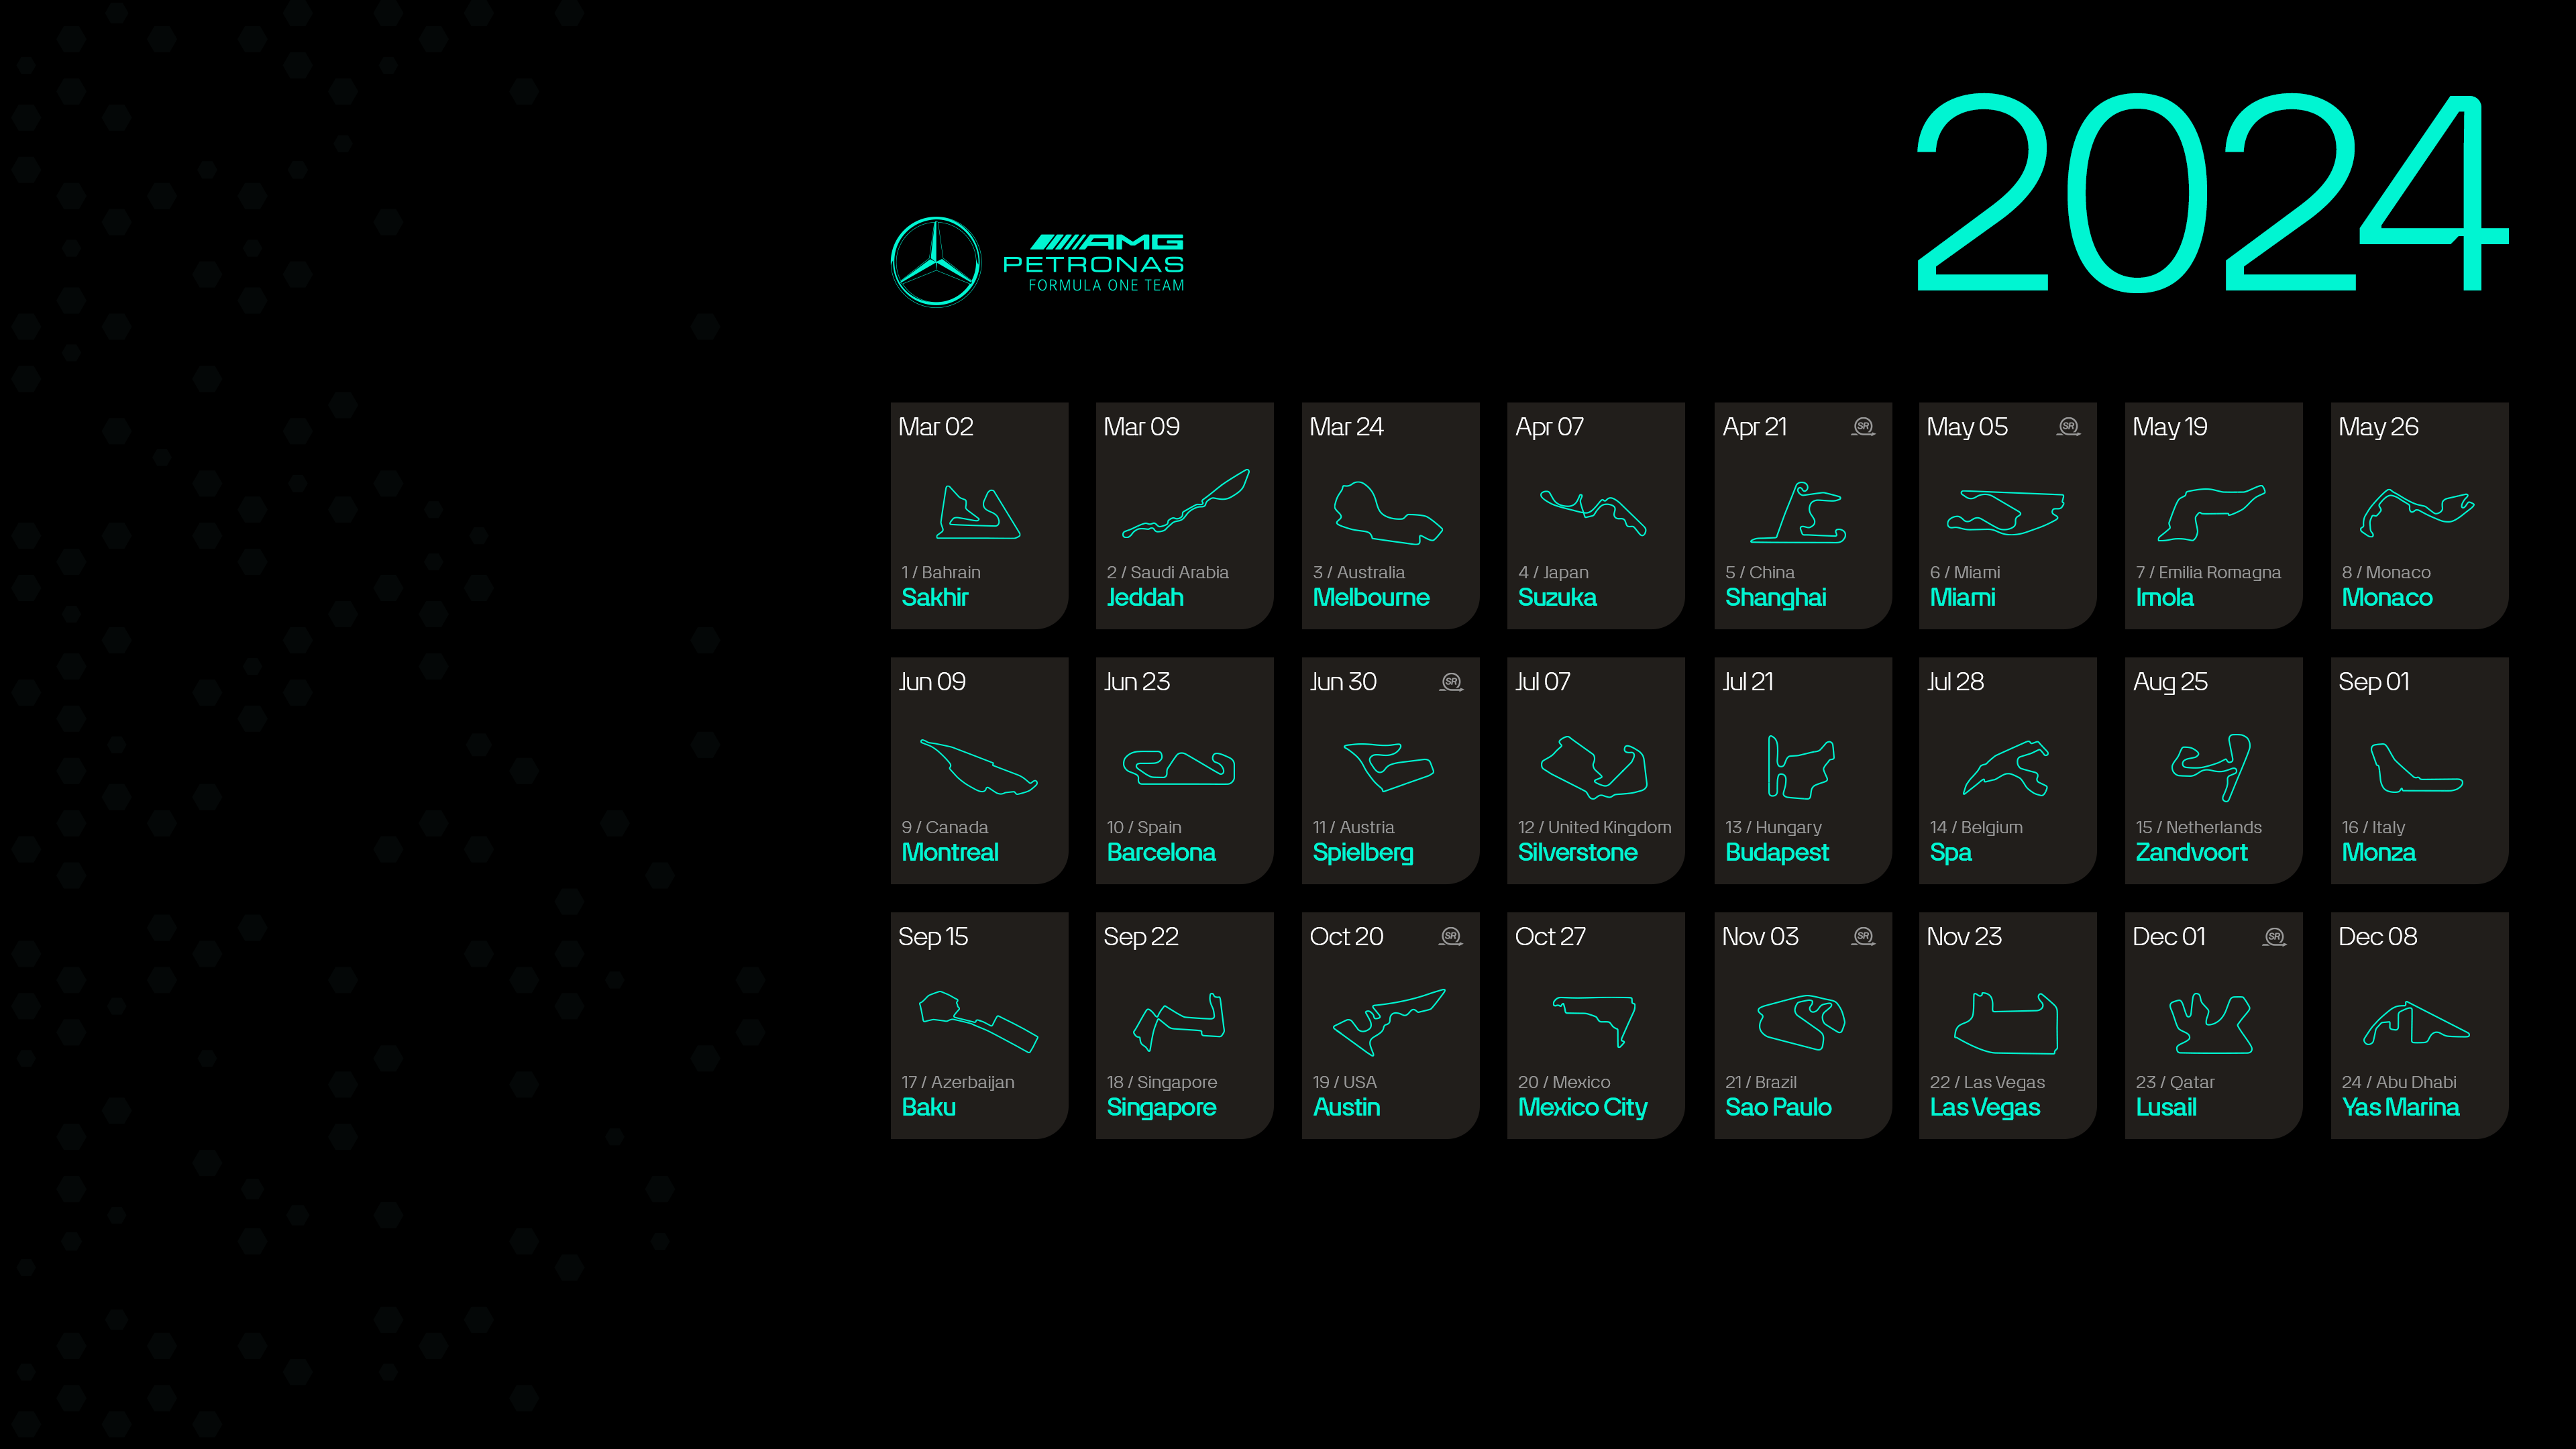 Mercedes F1 Map Formula 1 Calendar 3840x2160